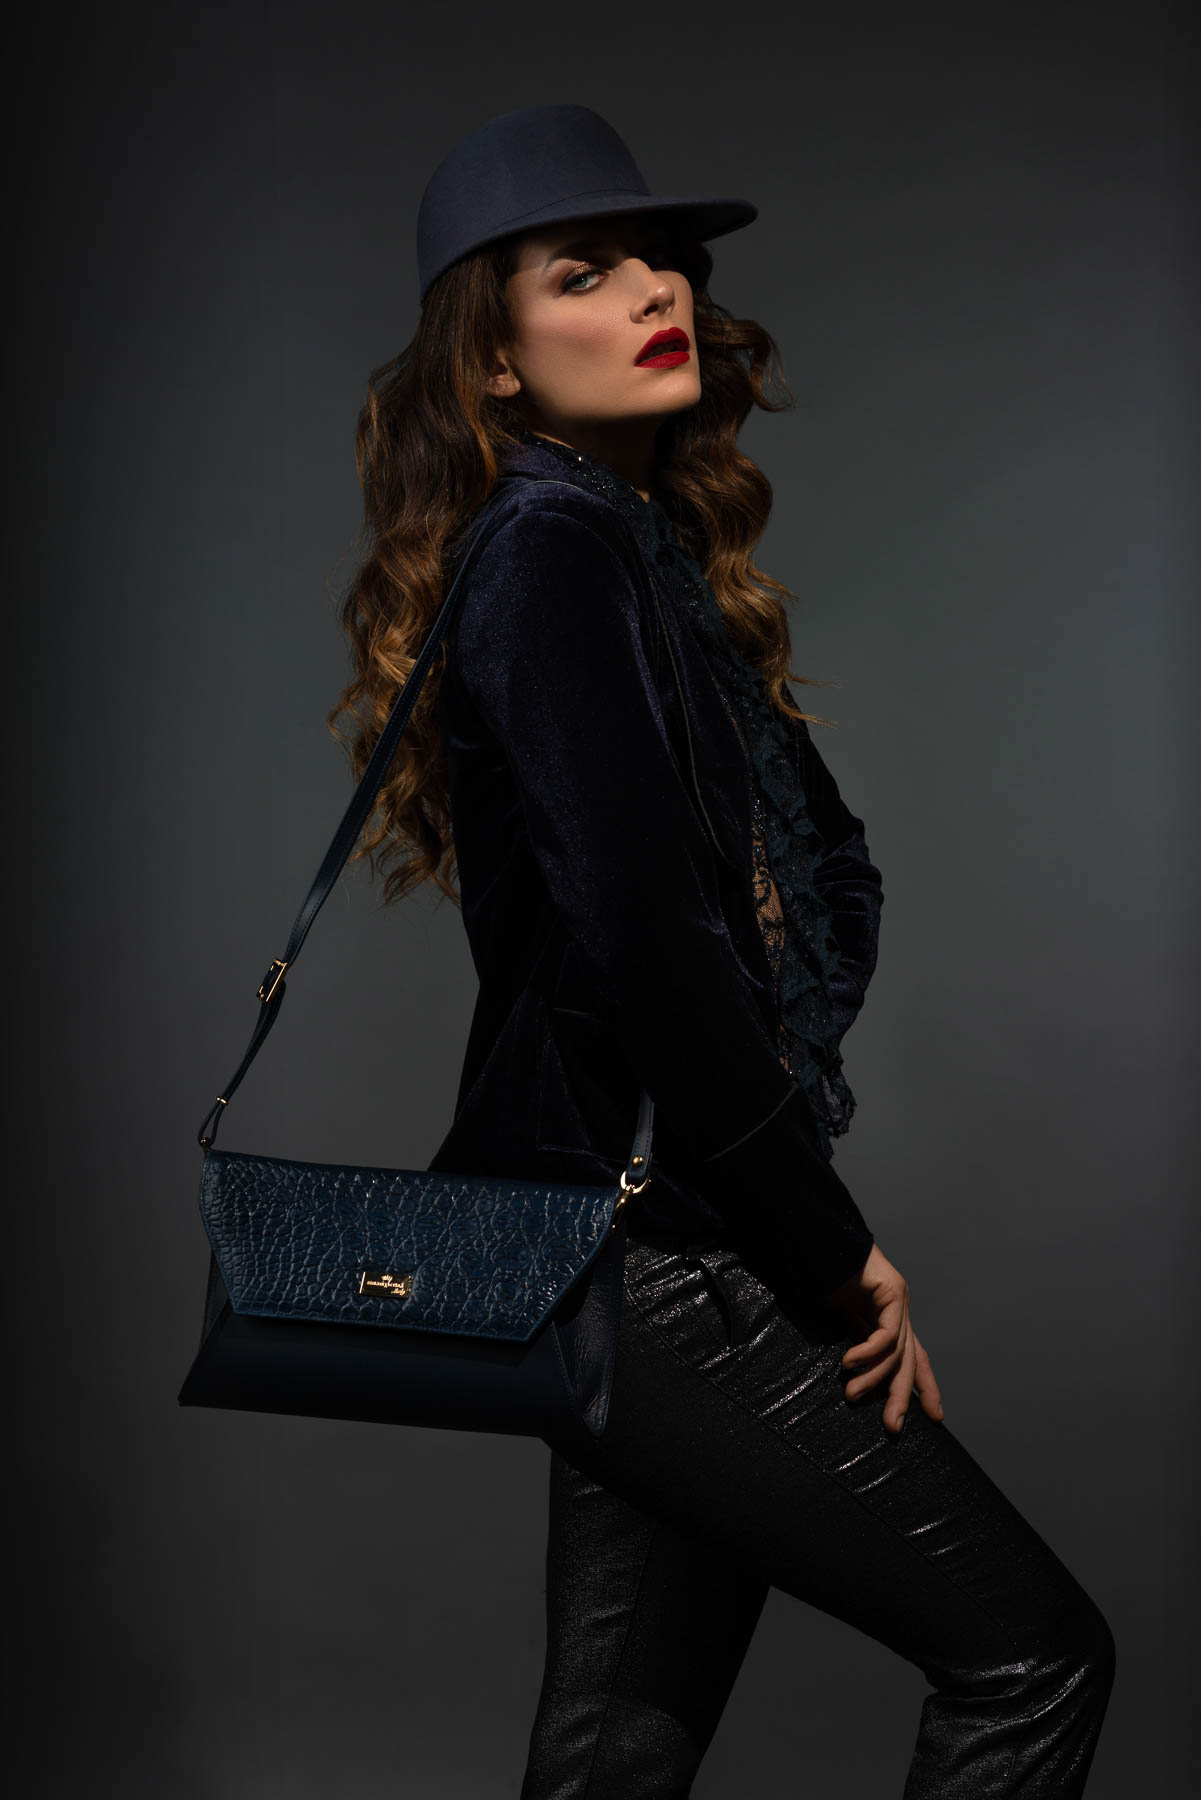 Modella in posa su sfondo scuro in studio fotografico per pubblicità di borse da donna